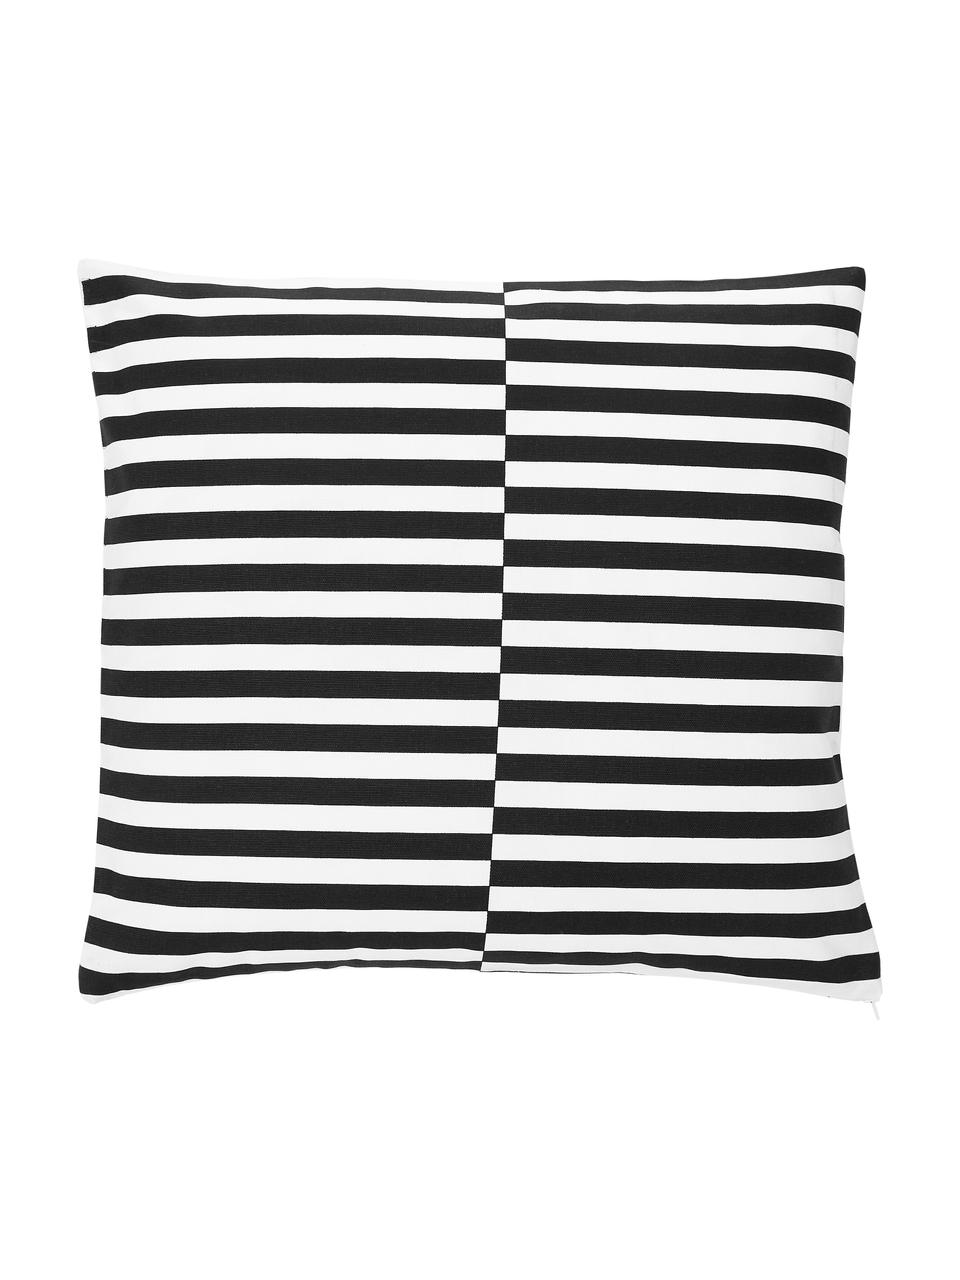 Kussenhoes Ivo in zwart/wit met grafisch patroon, 100% katoen, Wit, zwart, 45 x 45 cm